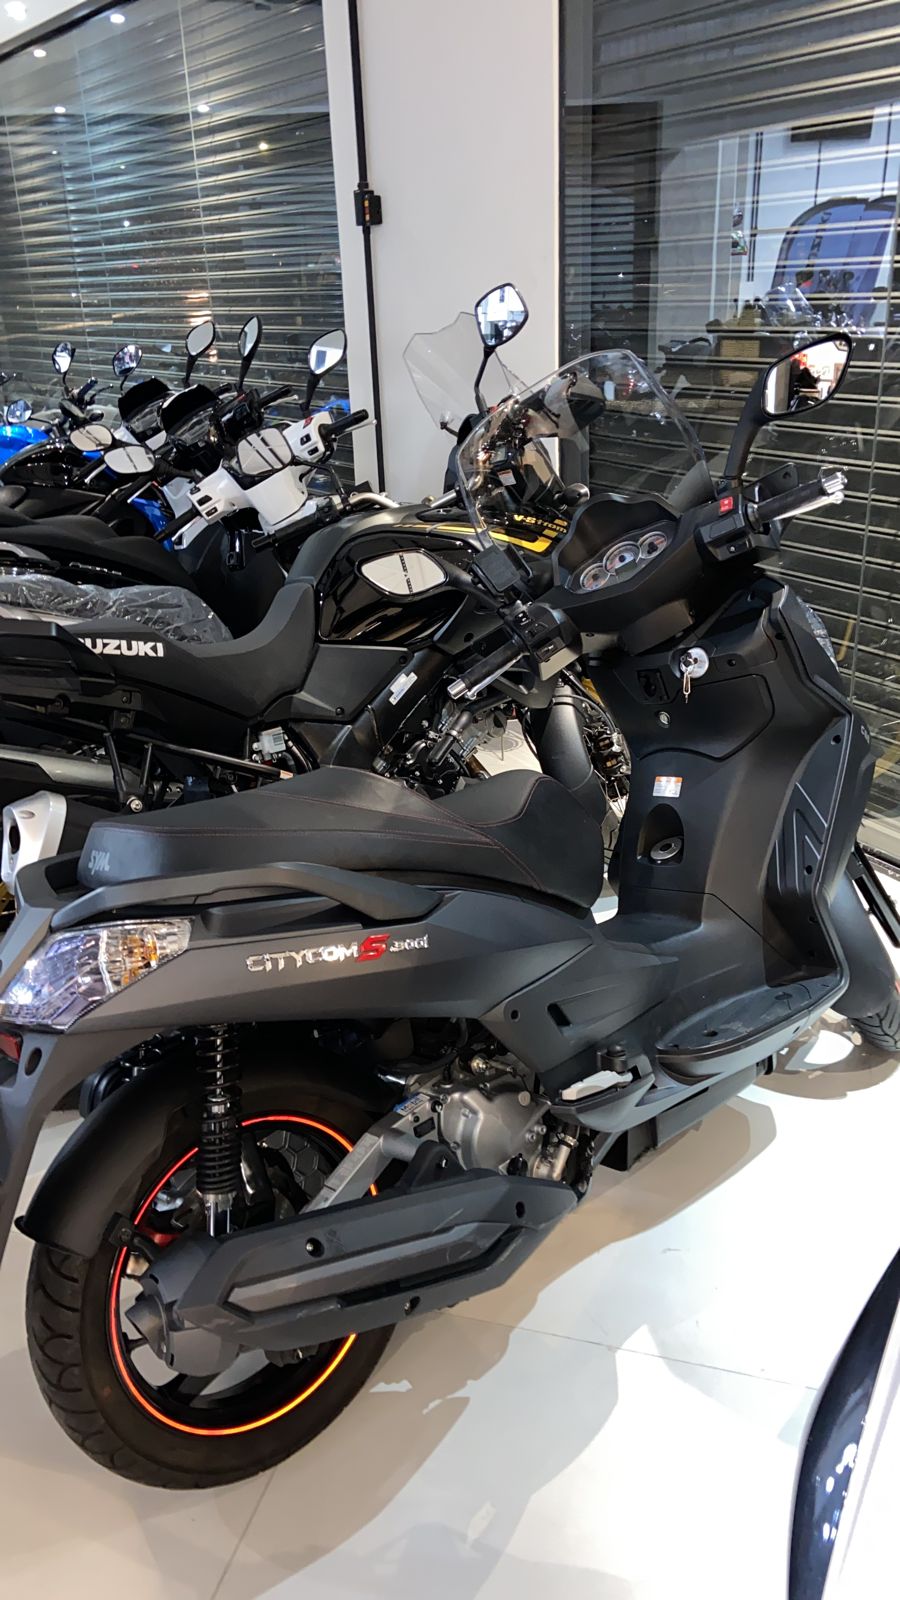 Dafra Citycom 300 S - Nova Suzuki Motos e Acessórios